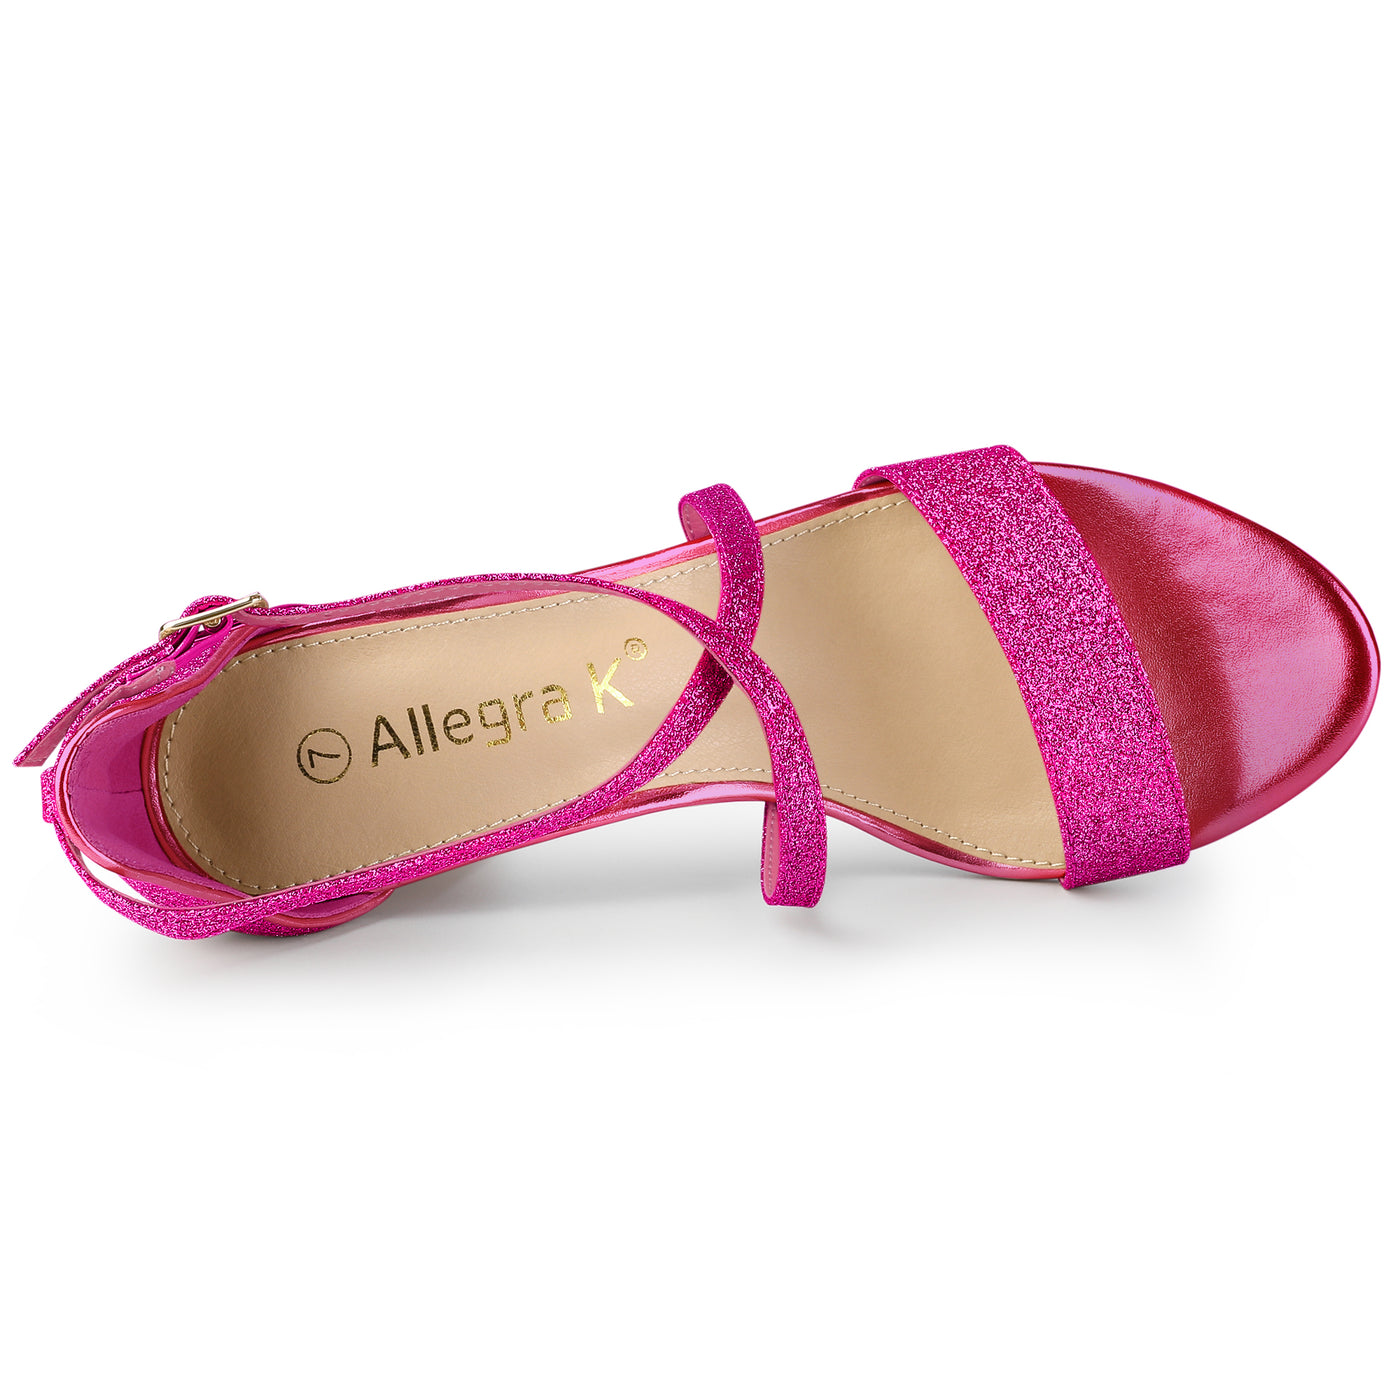 Allegra K Glitter Crisscross Strap Block Heel Sandals